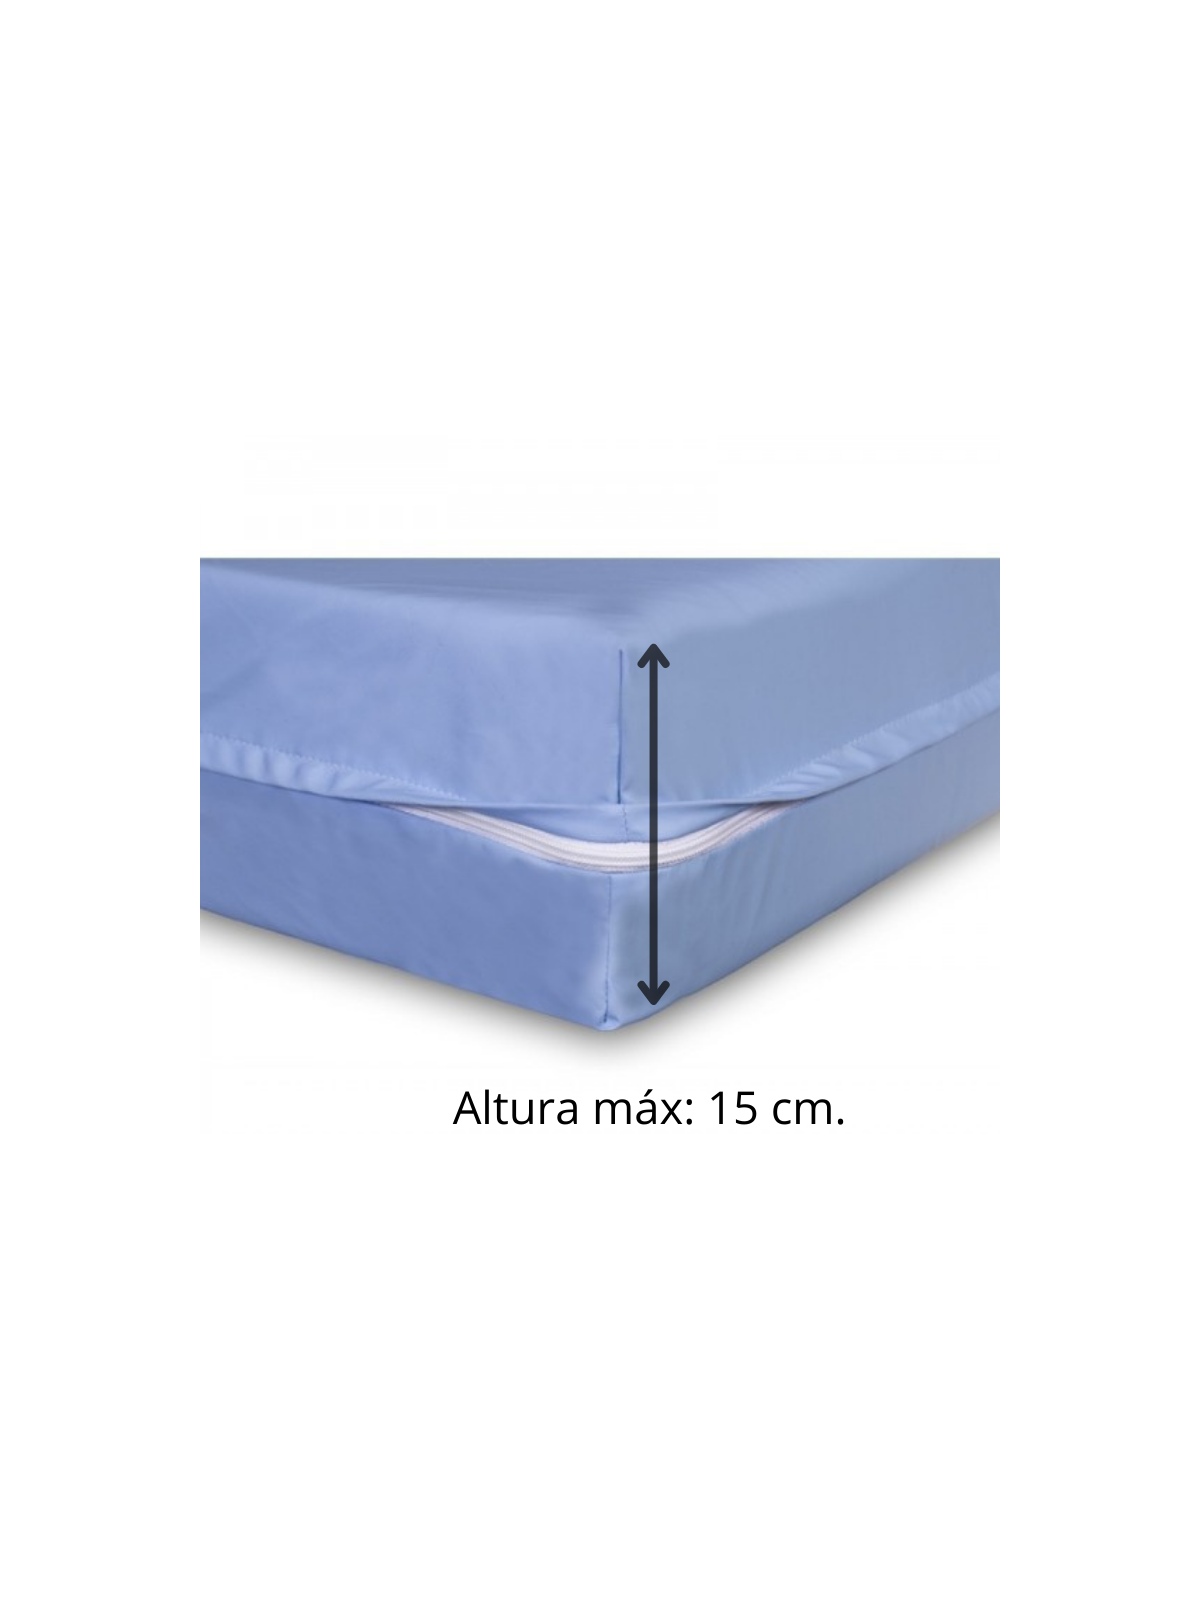 Protector de colchon impermeable para colchones de 150 cm x 190/200 cm  impermeble. Funda para cama 150 cm x 190/200 cm. Funda im